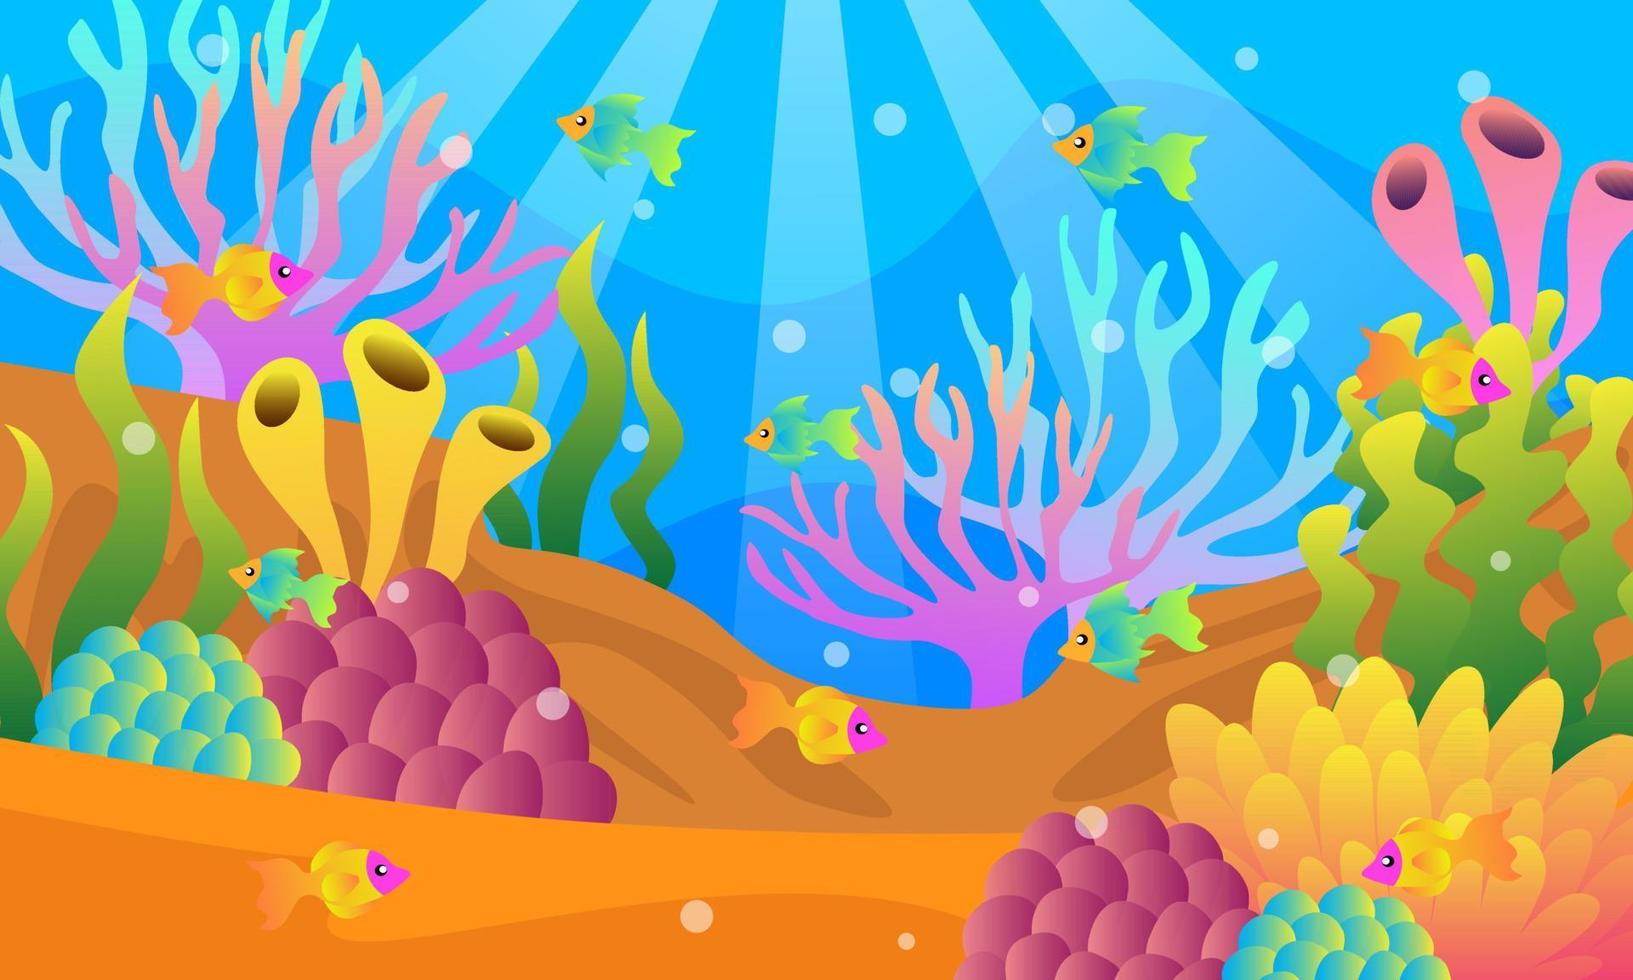 illustrations de paysages sous-marins, vecteurs, coraux, poissons colorés, algues, plantes marines, mer profonde, grottes, sable, lumière du soleil, illustrations de livres pour enfants, affiches, sites Web, applications mobiles, etc. vecteur